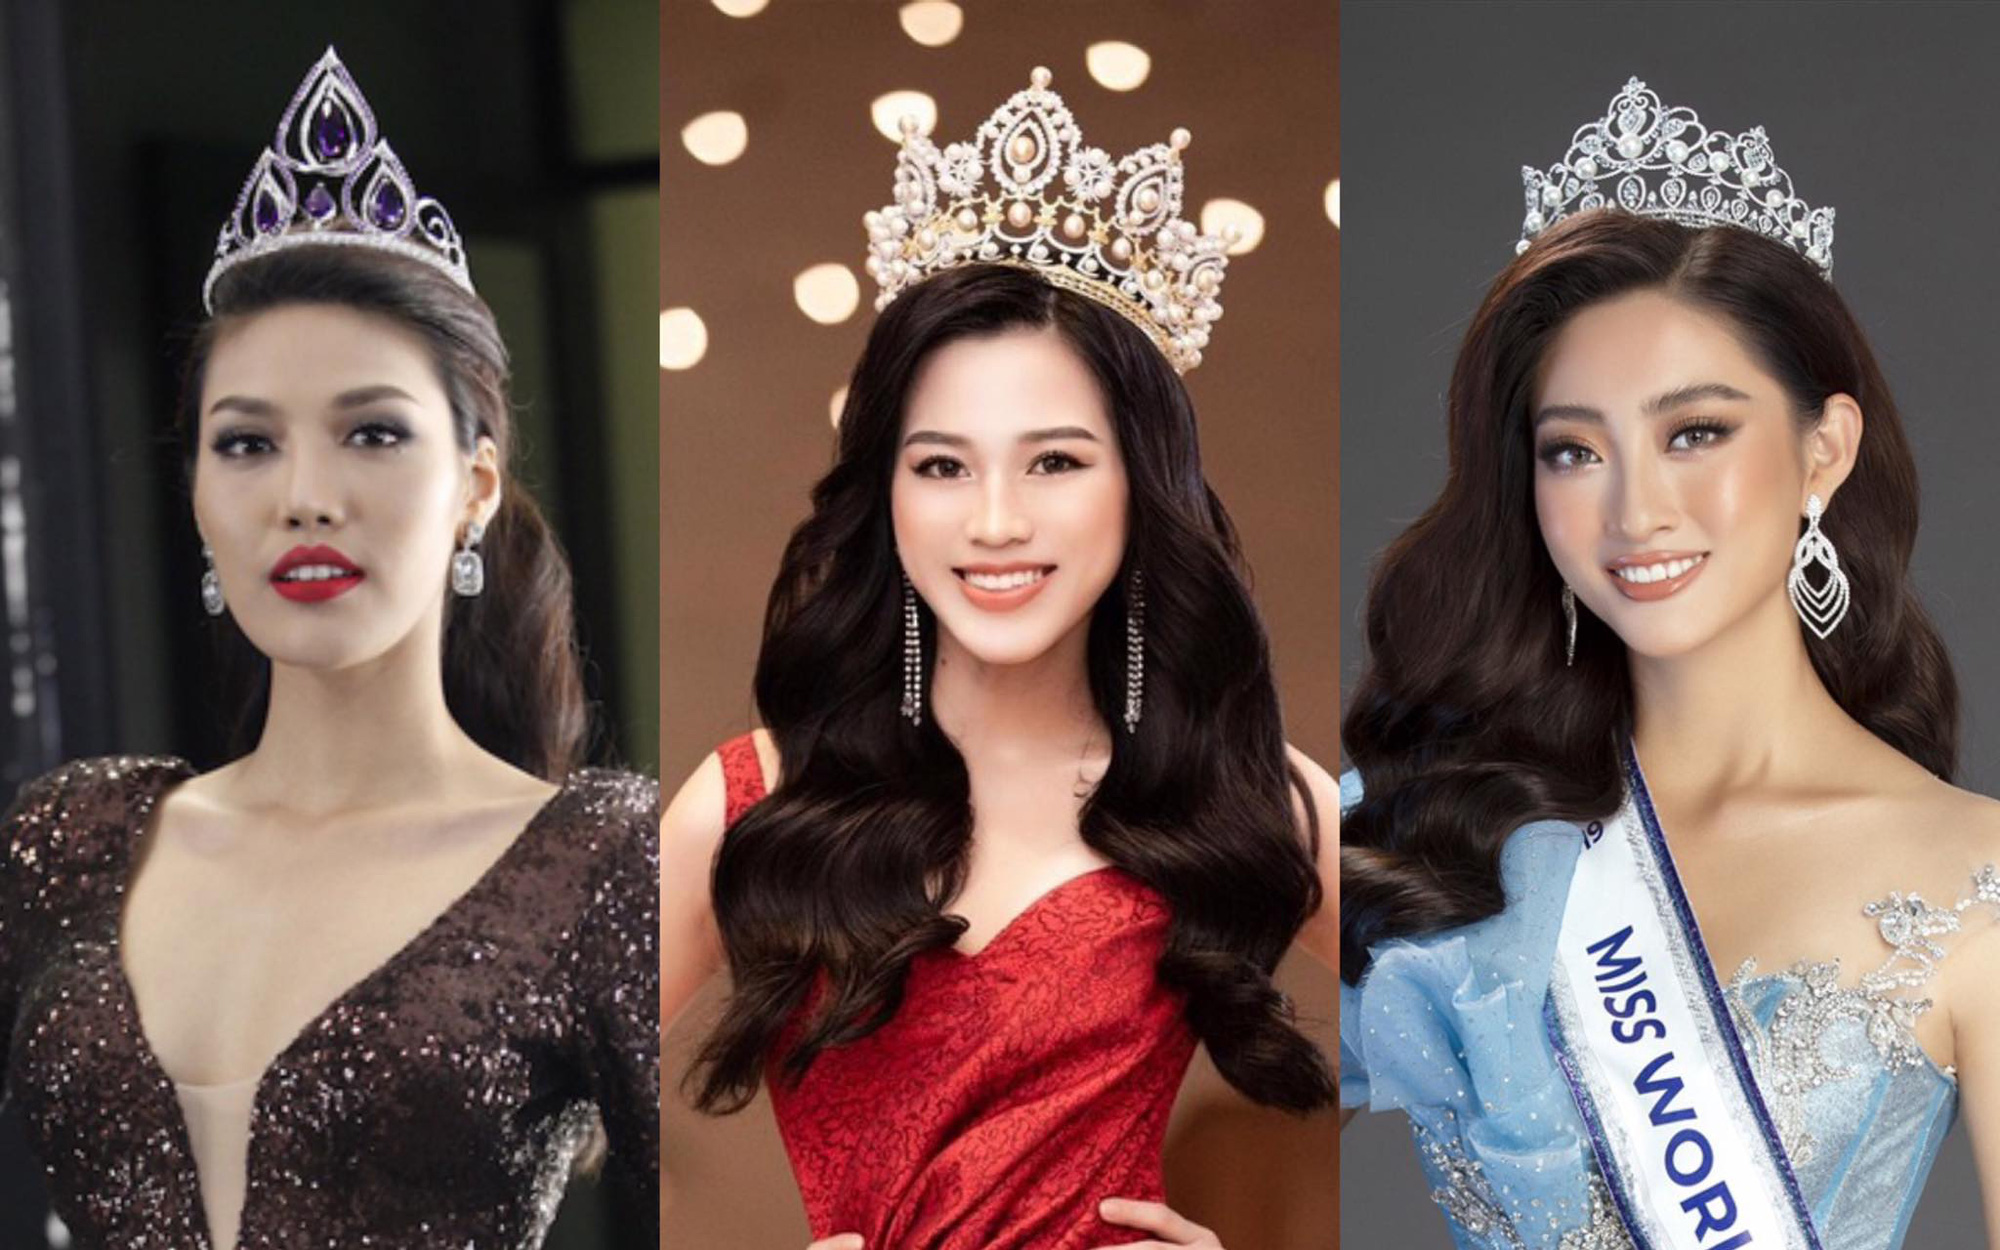 Trình tiếng Anh của đại diện Việt Nam thi Miss World: Lương Thùy Linh đỉnh khỏi bàn, Đỗ Hà chuẩn bị thi khả năng tới đâu?